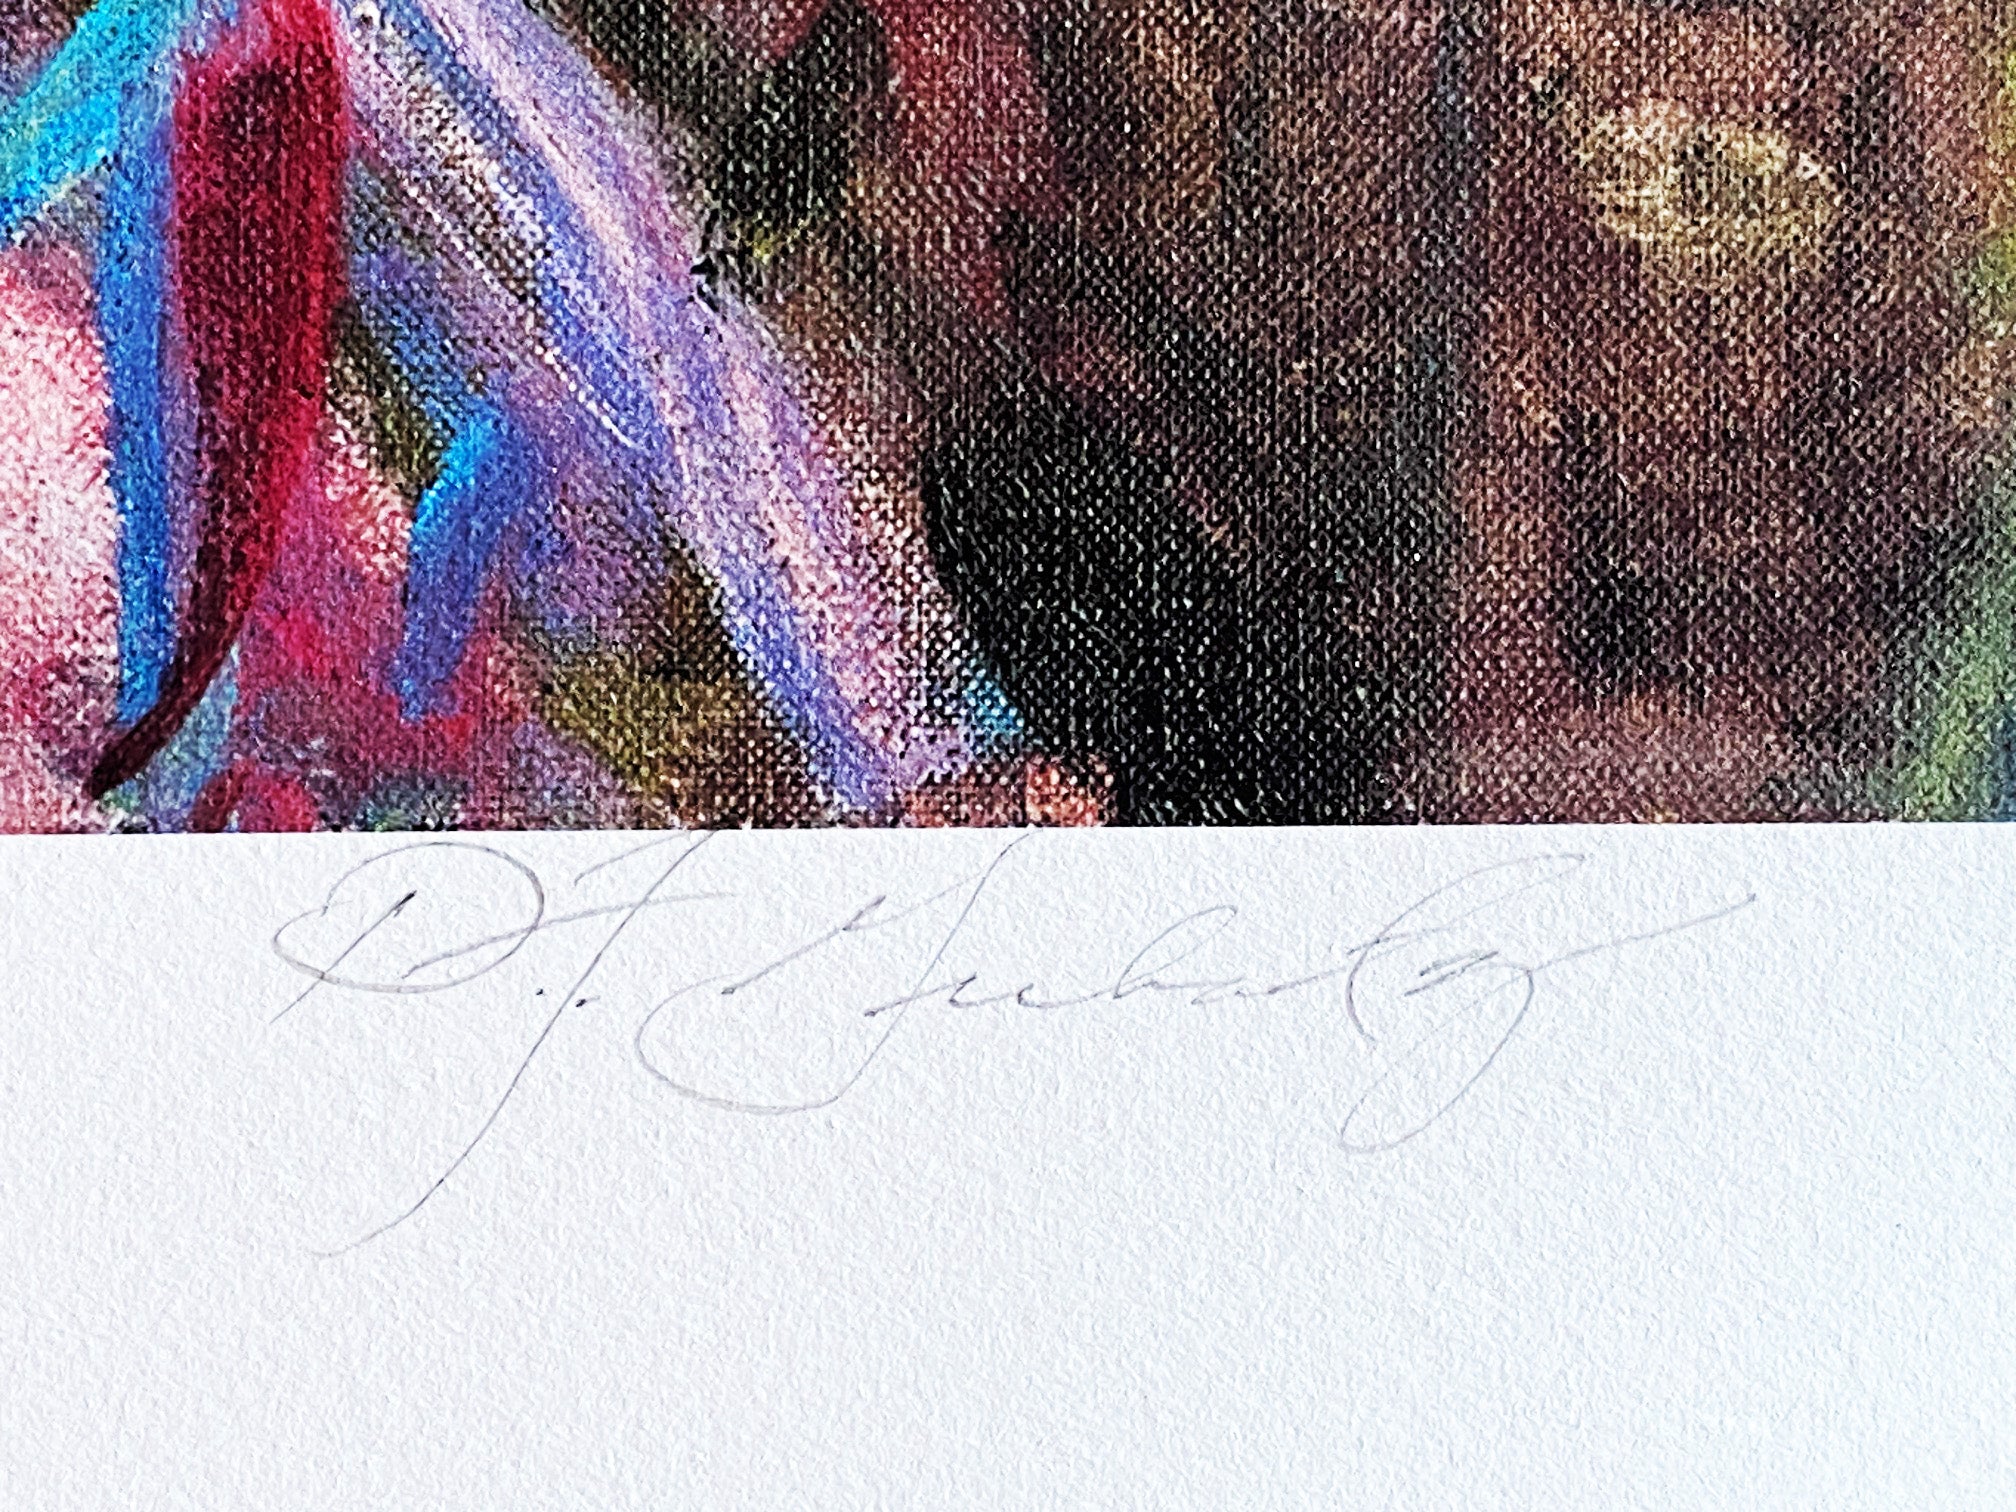 Extending Grace Dan Gerhartz Giclée Print Artist Hand Signed and Numbered